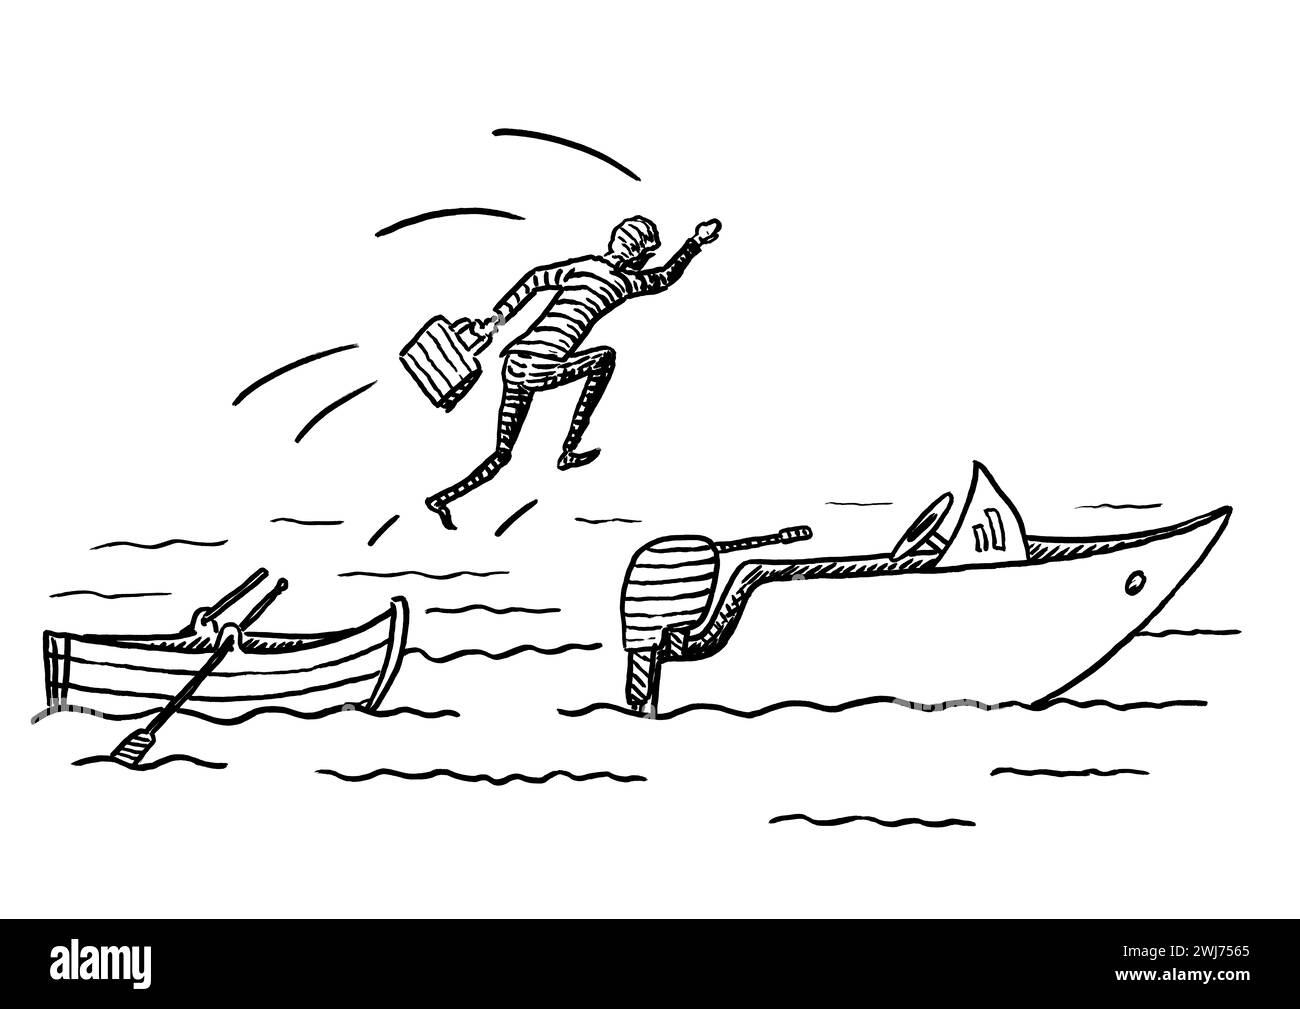 Croquis dessiné à la main d'un manager sautant d'un bateau à rames sur un bateau à moteur. Métaphore pour le mouvement de carrière, le changement, saisir l'opportunité d'affaires, entrepreneur Banque D'Images